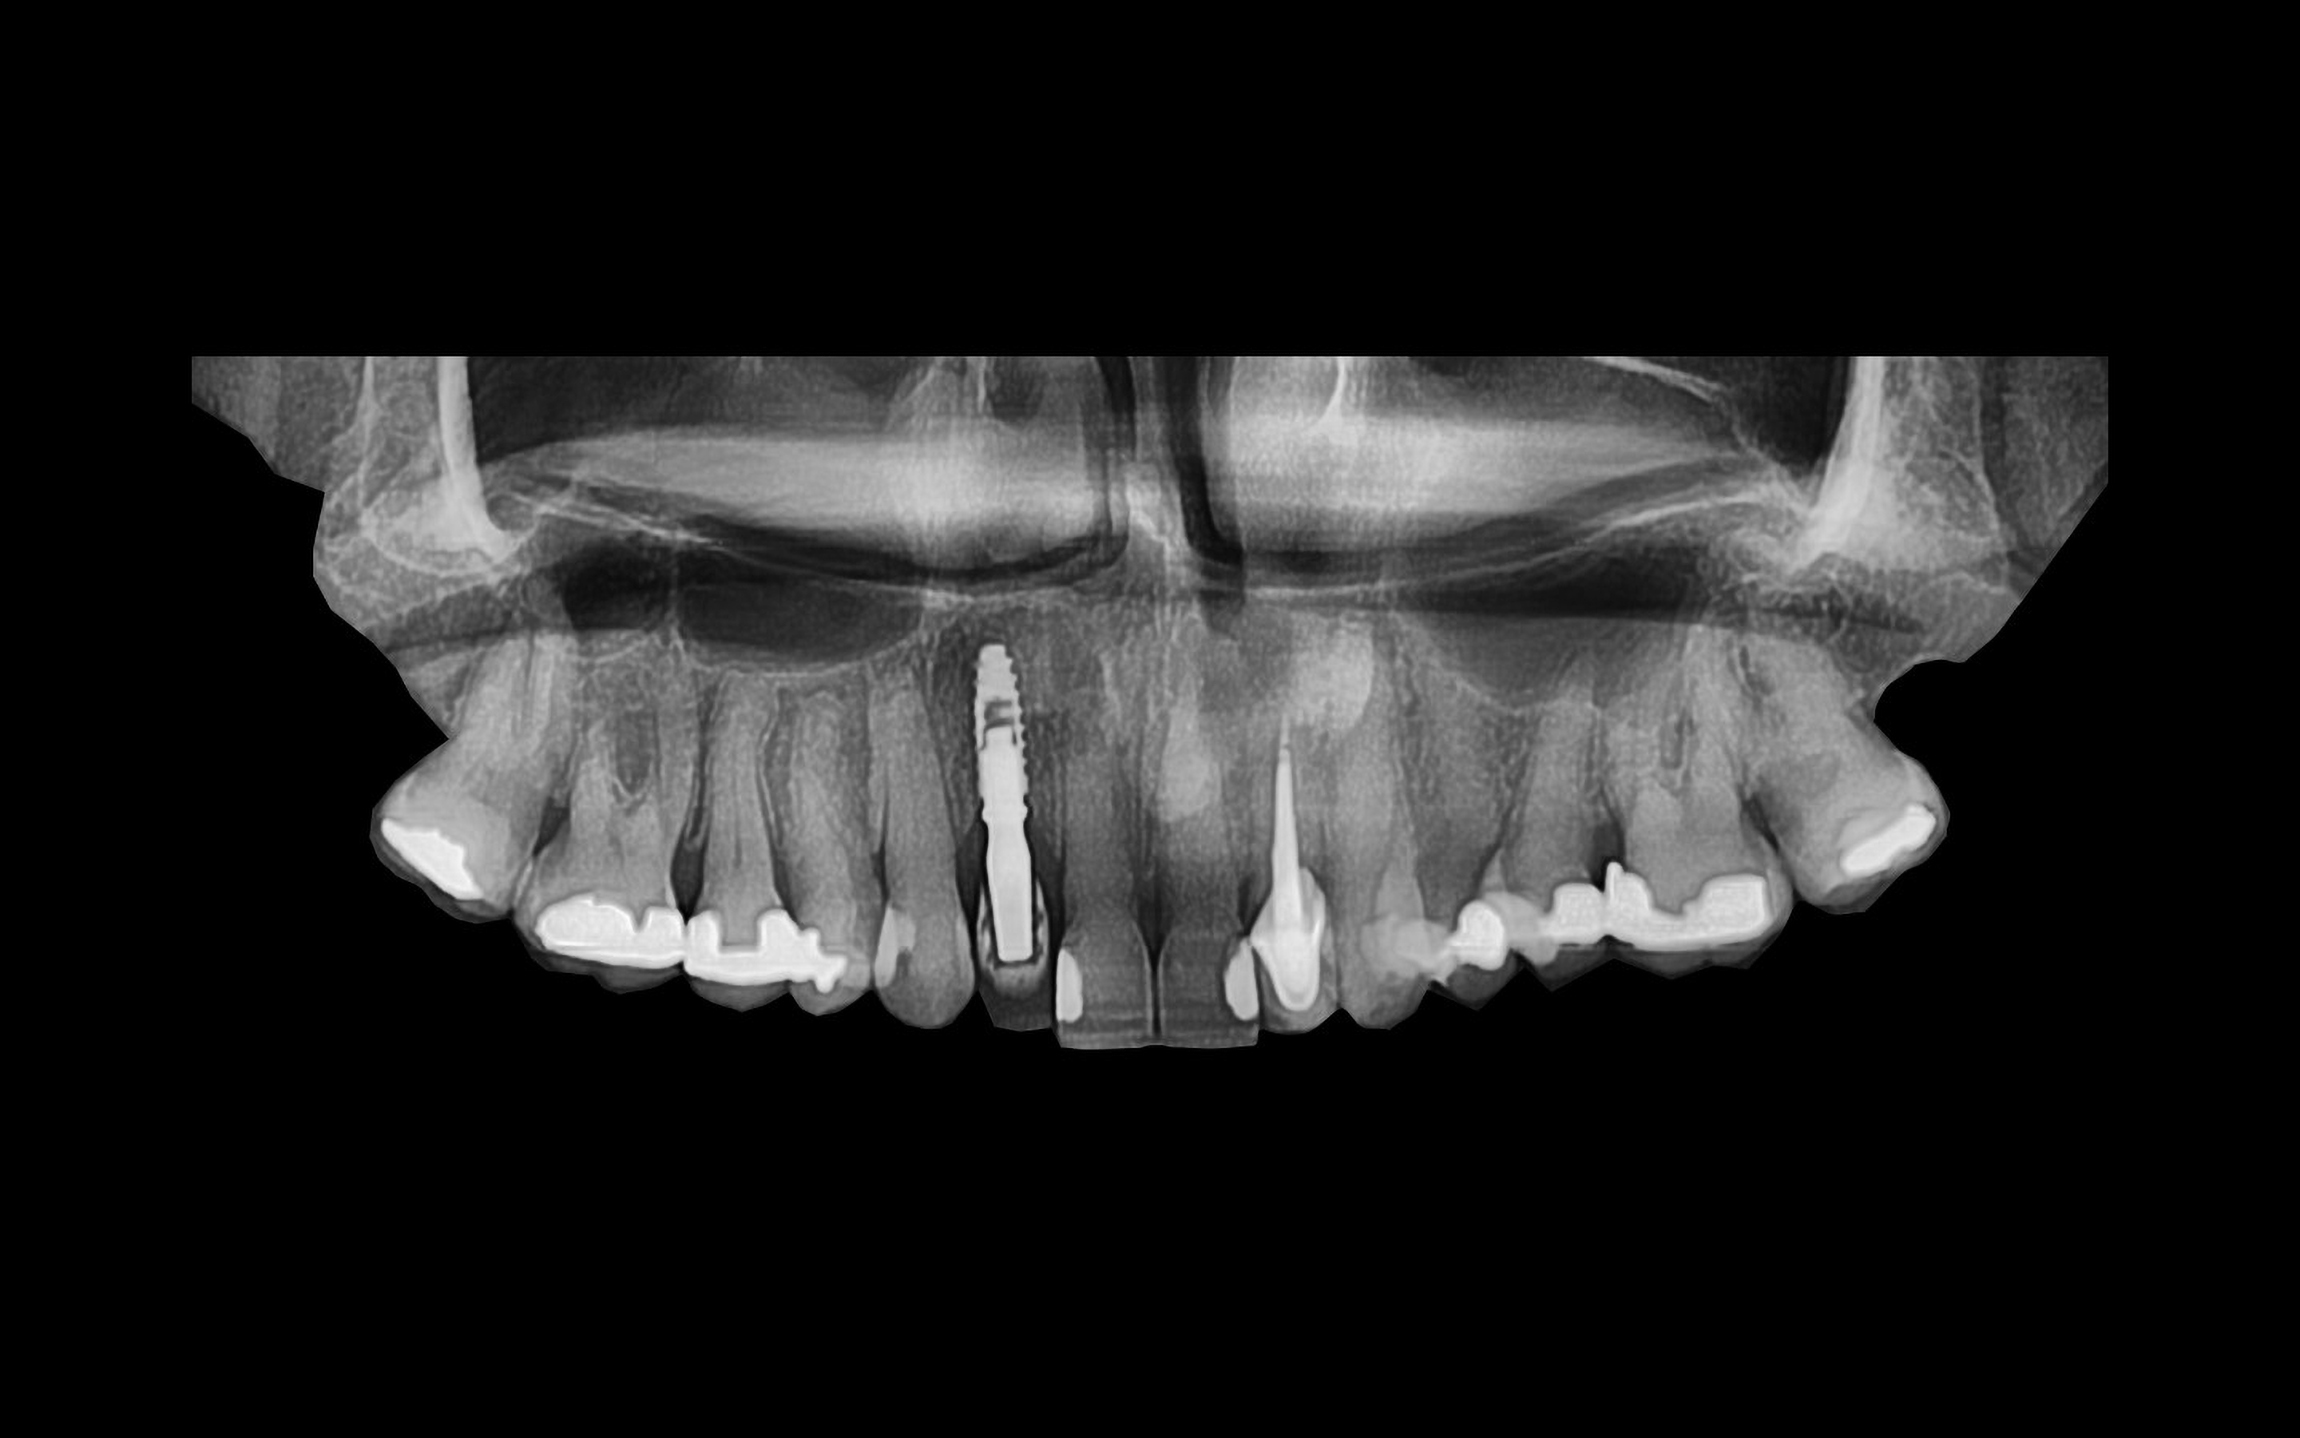 image18 - Reabilitação dento-alveolar com implante Arcsys, enxerto conjuntivo e substituto ósseo Nanosynt